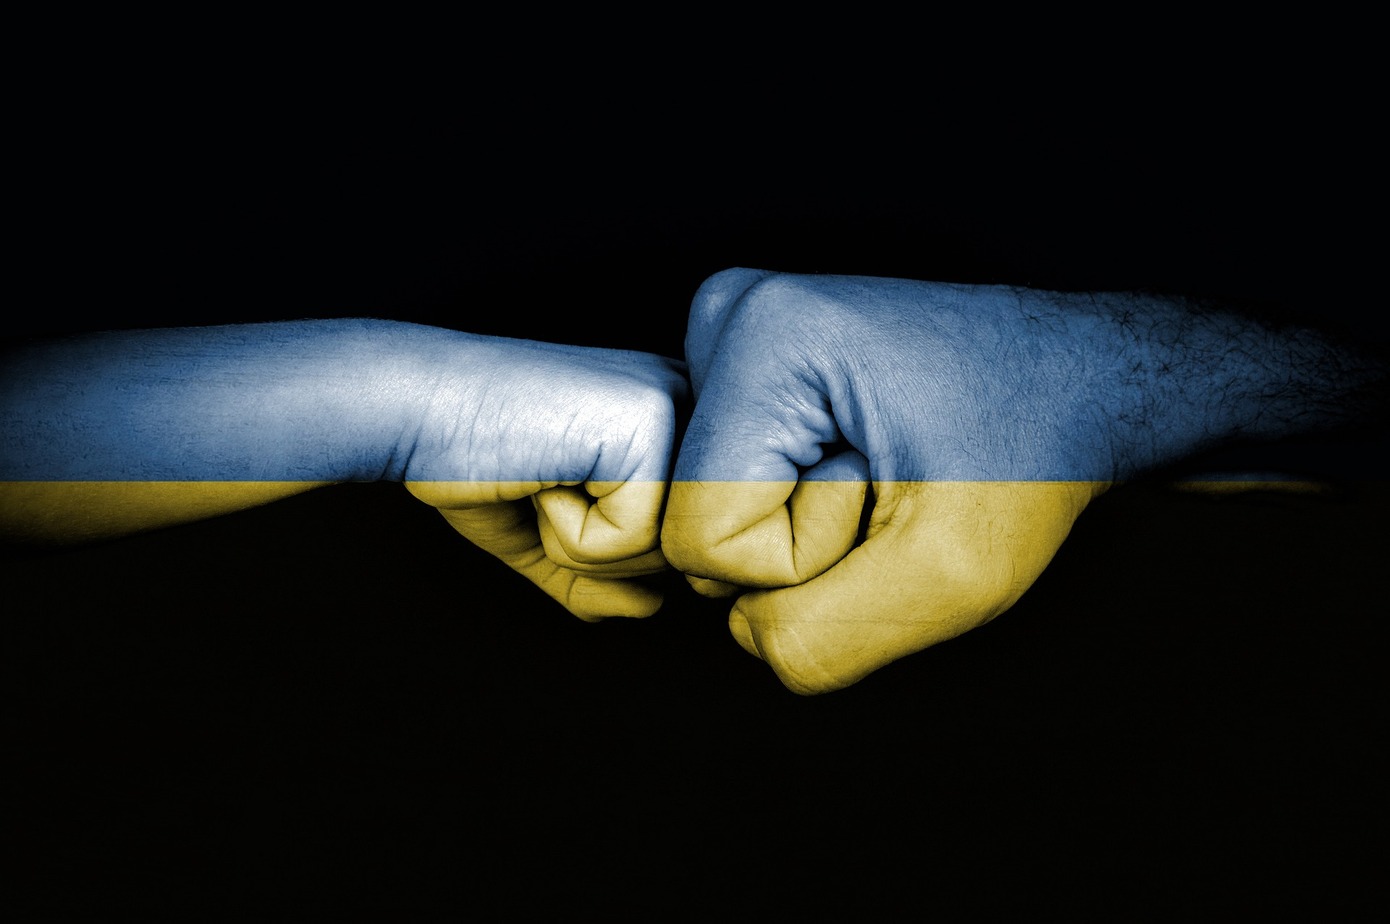 Eesti eraldab Ukrainas sõjakuritegude uurimiseks ligi veerand miljonit FOTO: Pixabay